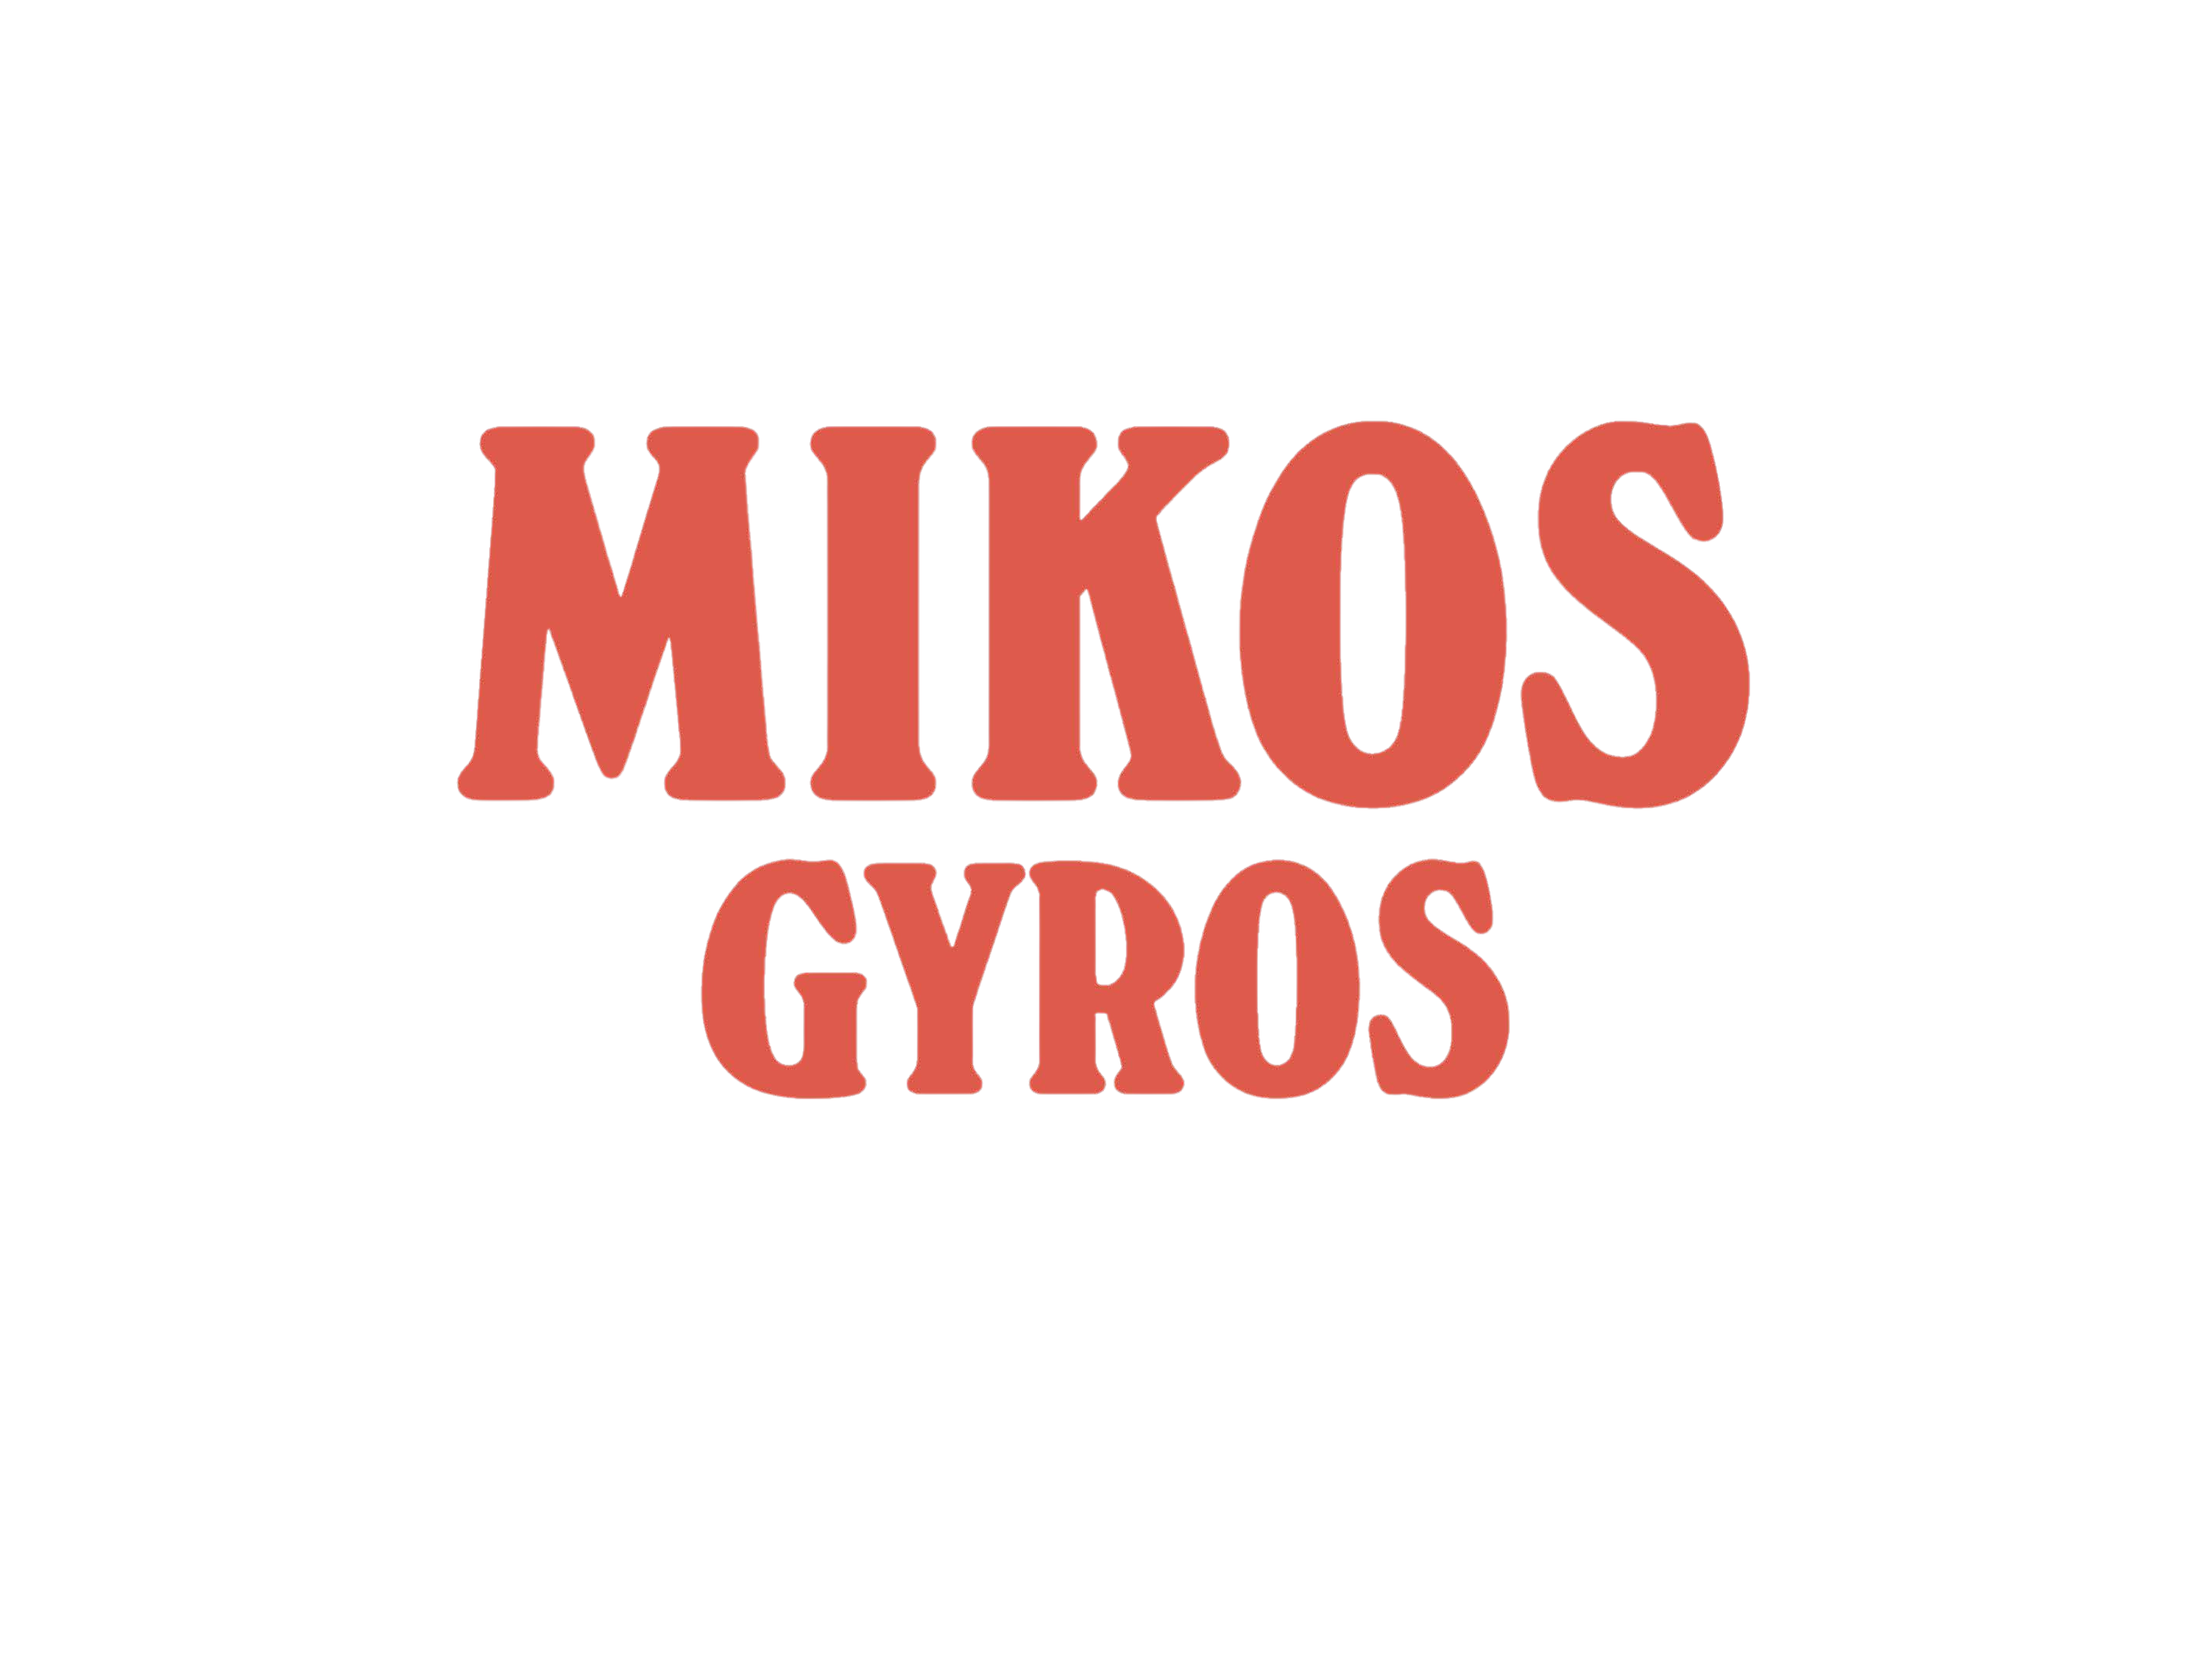 Mikos Gyros (2845 x 2134px)